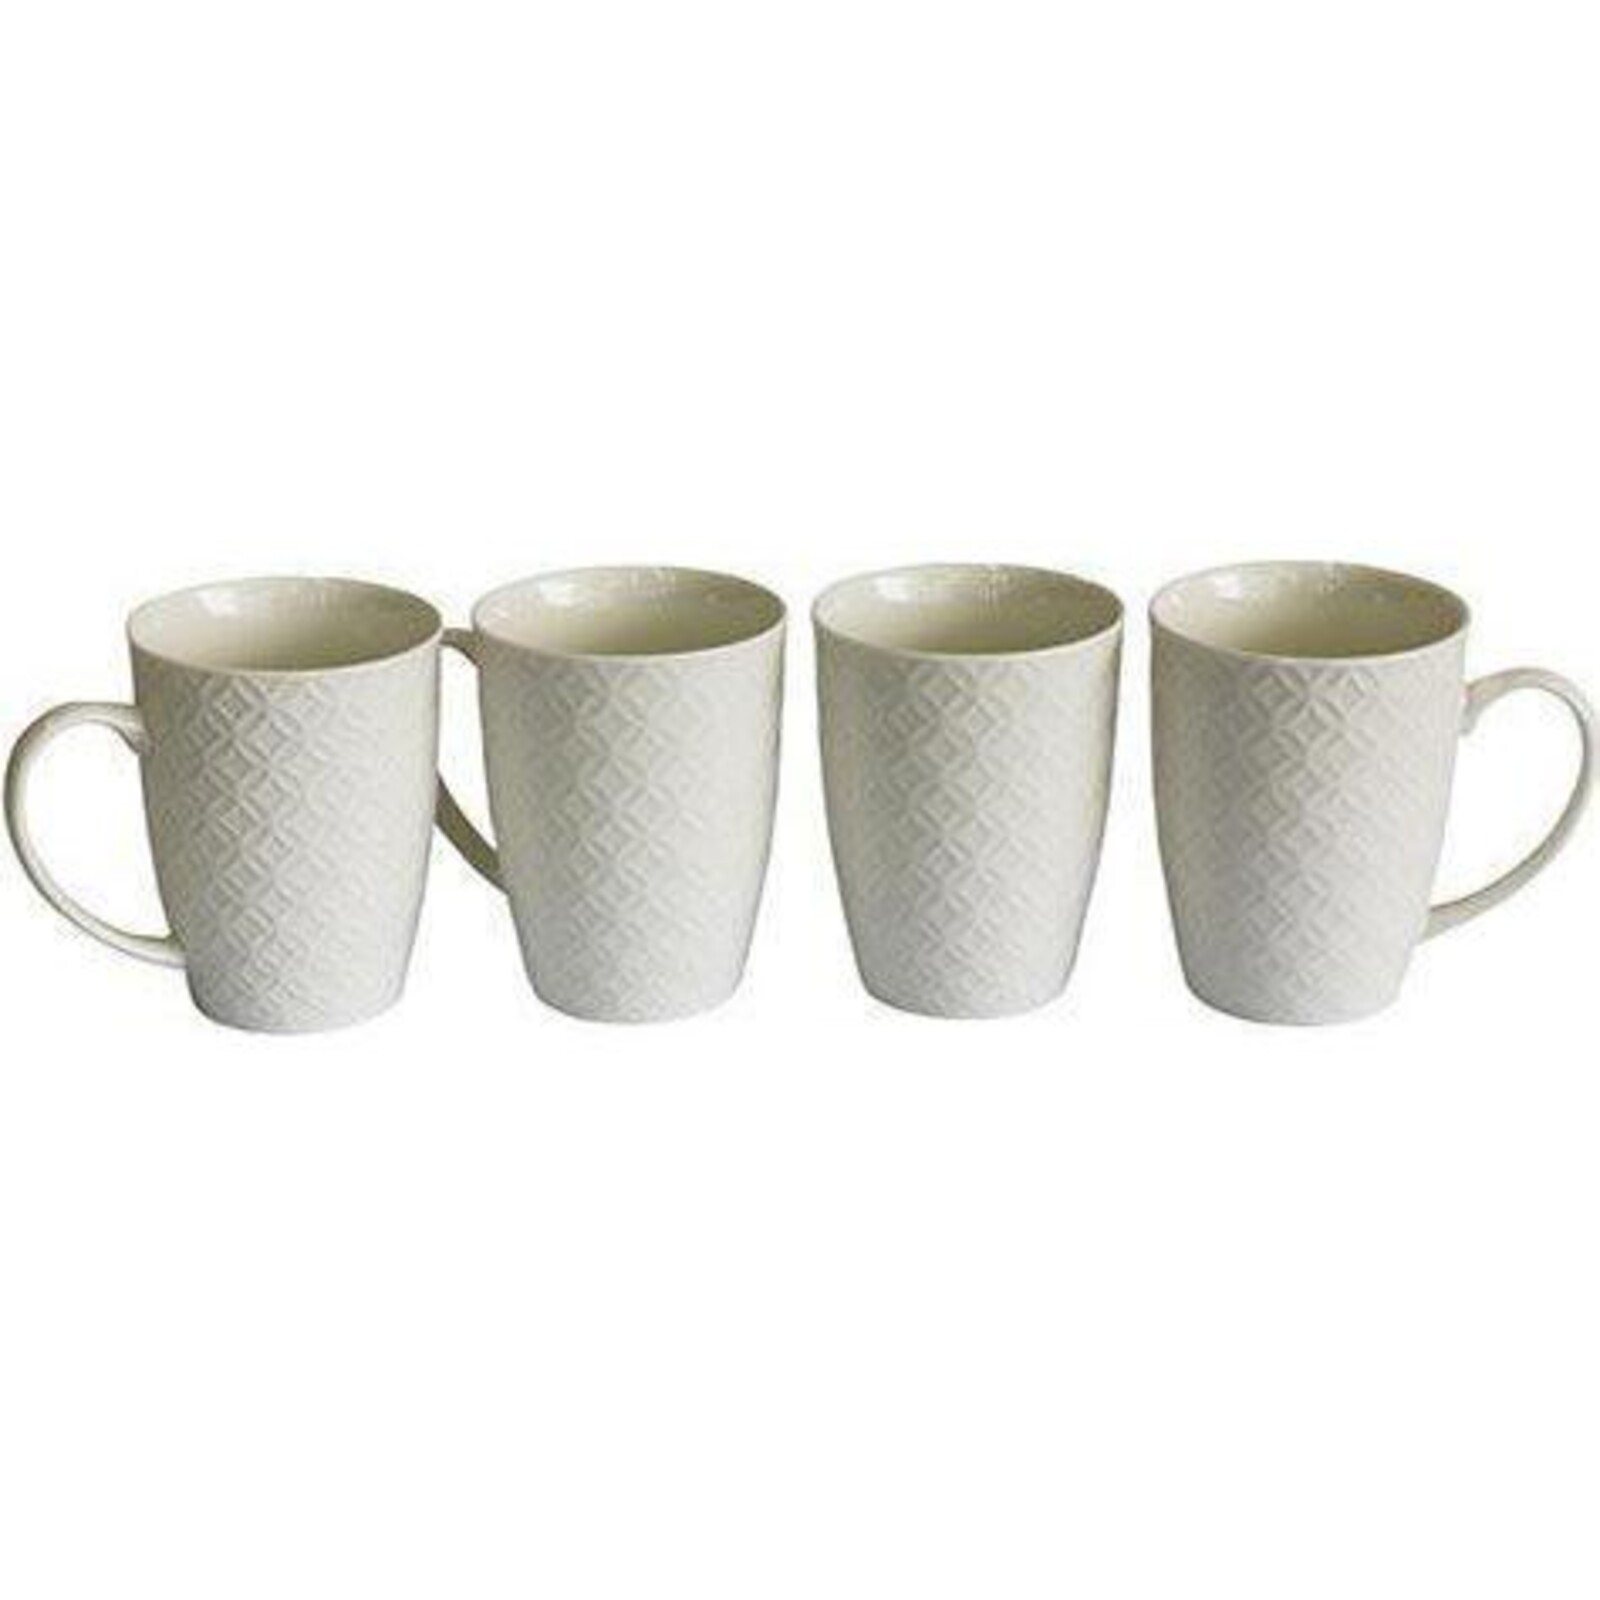 Coffee Mug White Texture